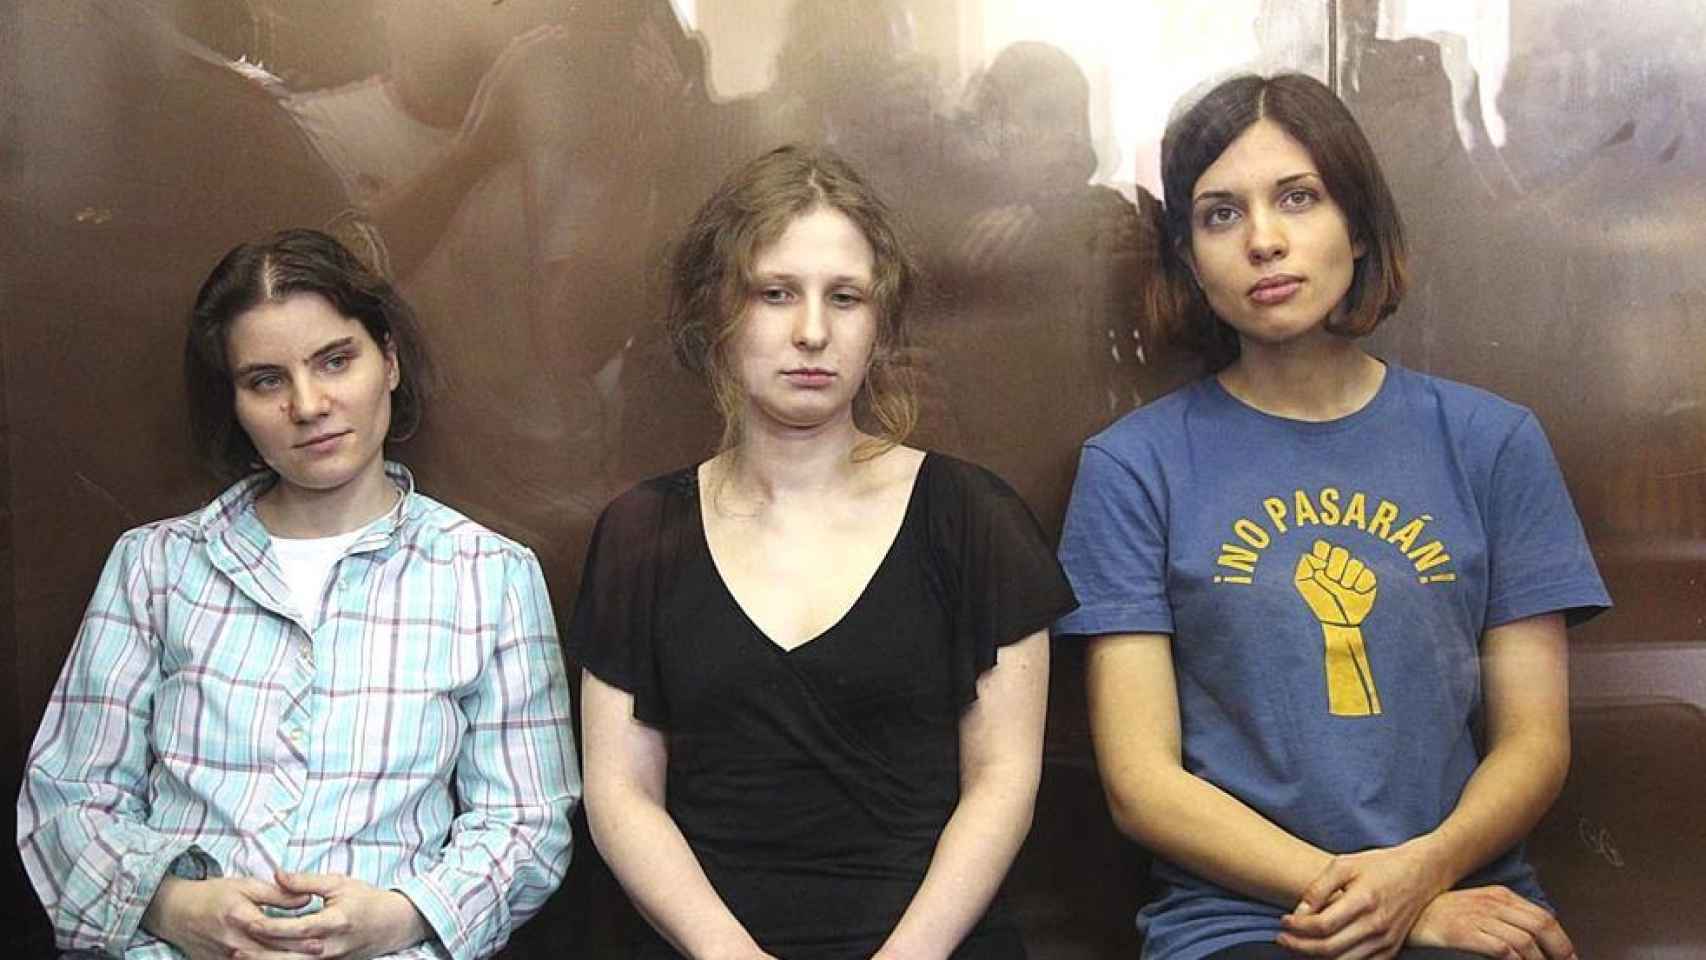 Las jovenes componentes del grupo Pussy Riot en el juicio